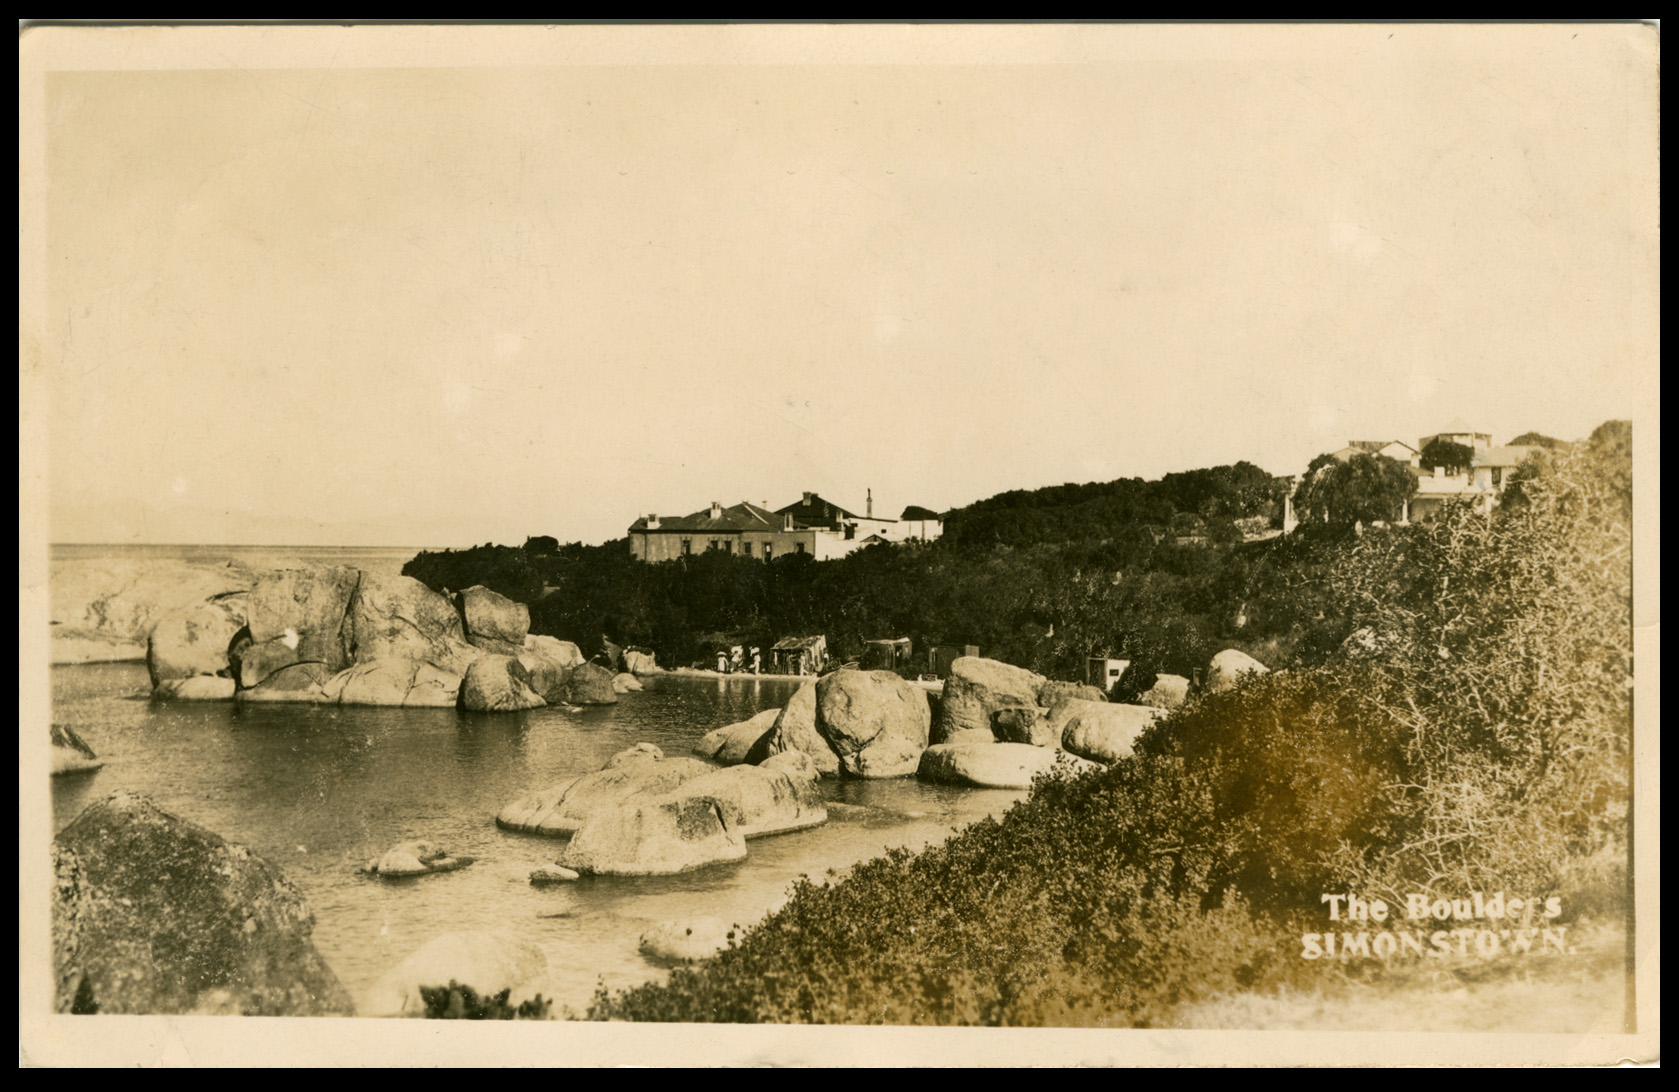 The-Boulders-Simonstown-1920s.jpg